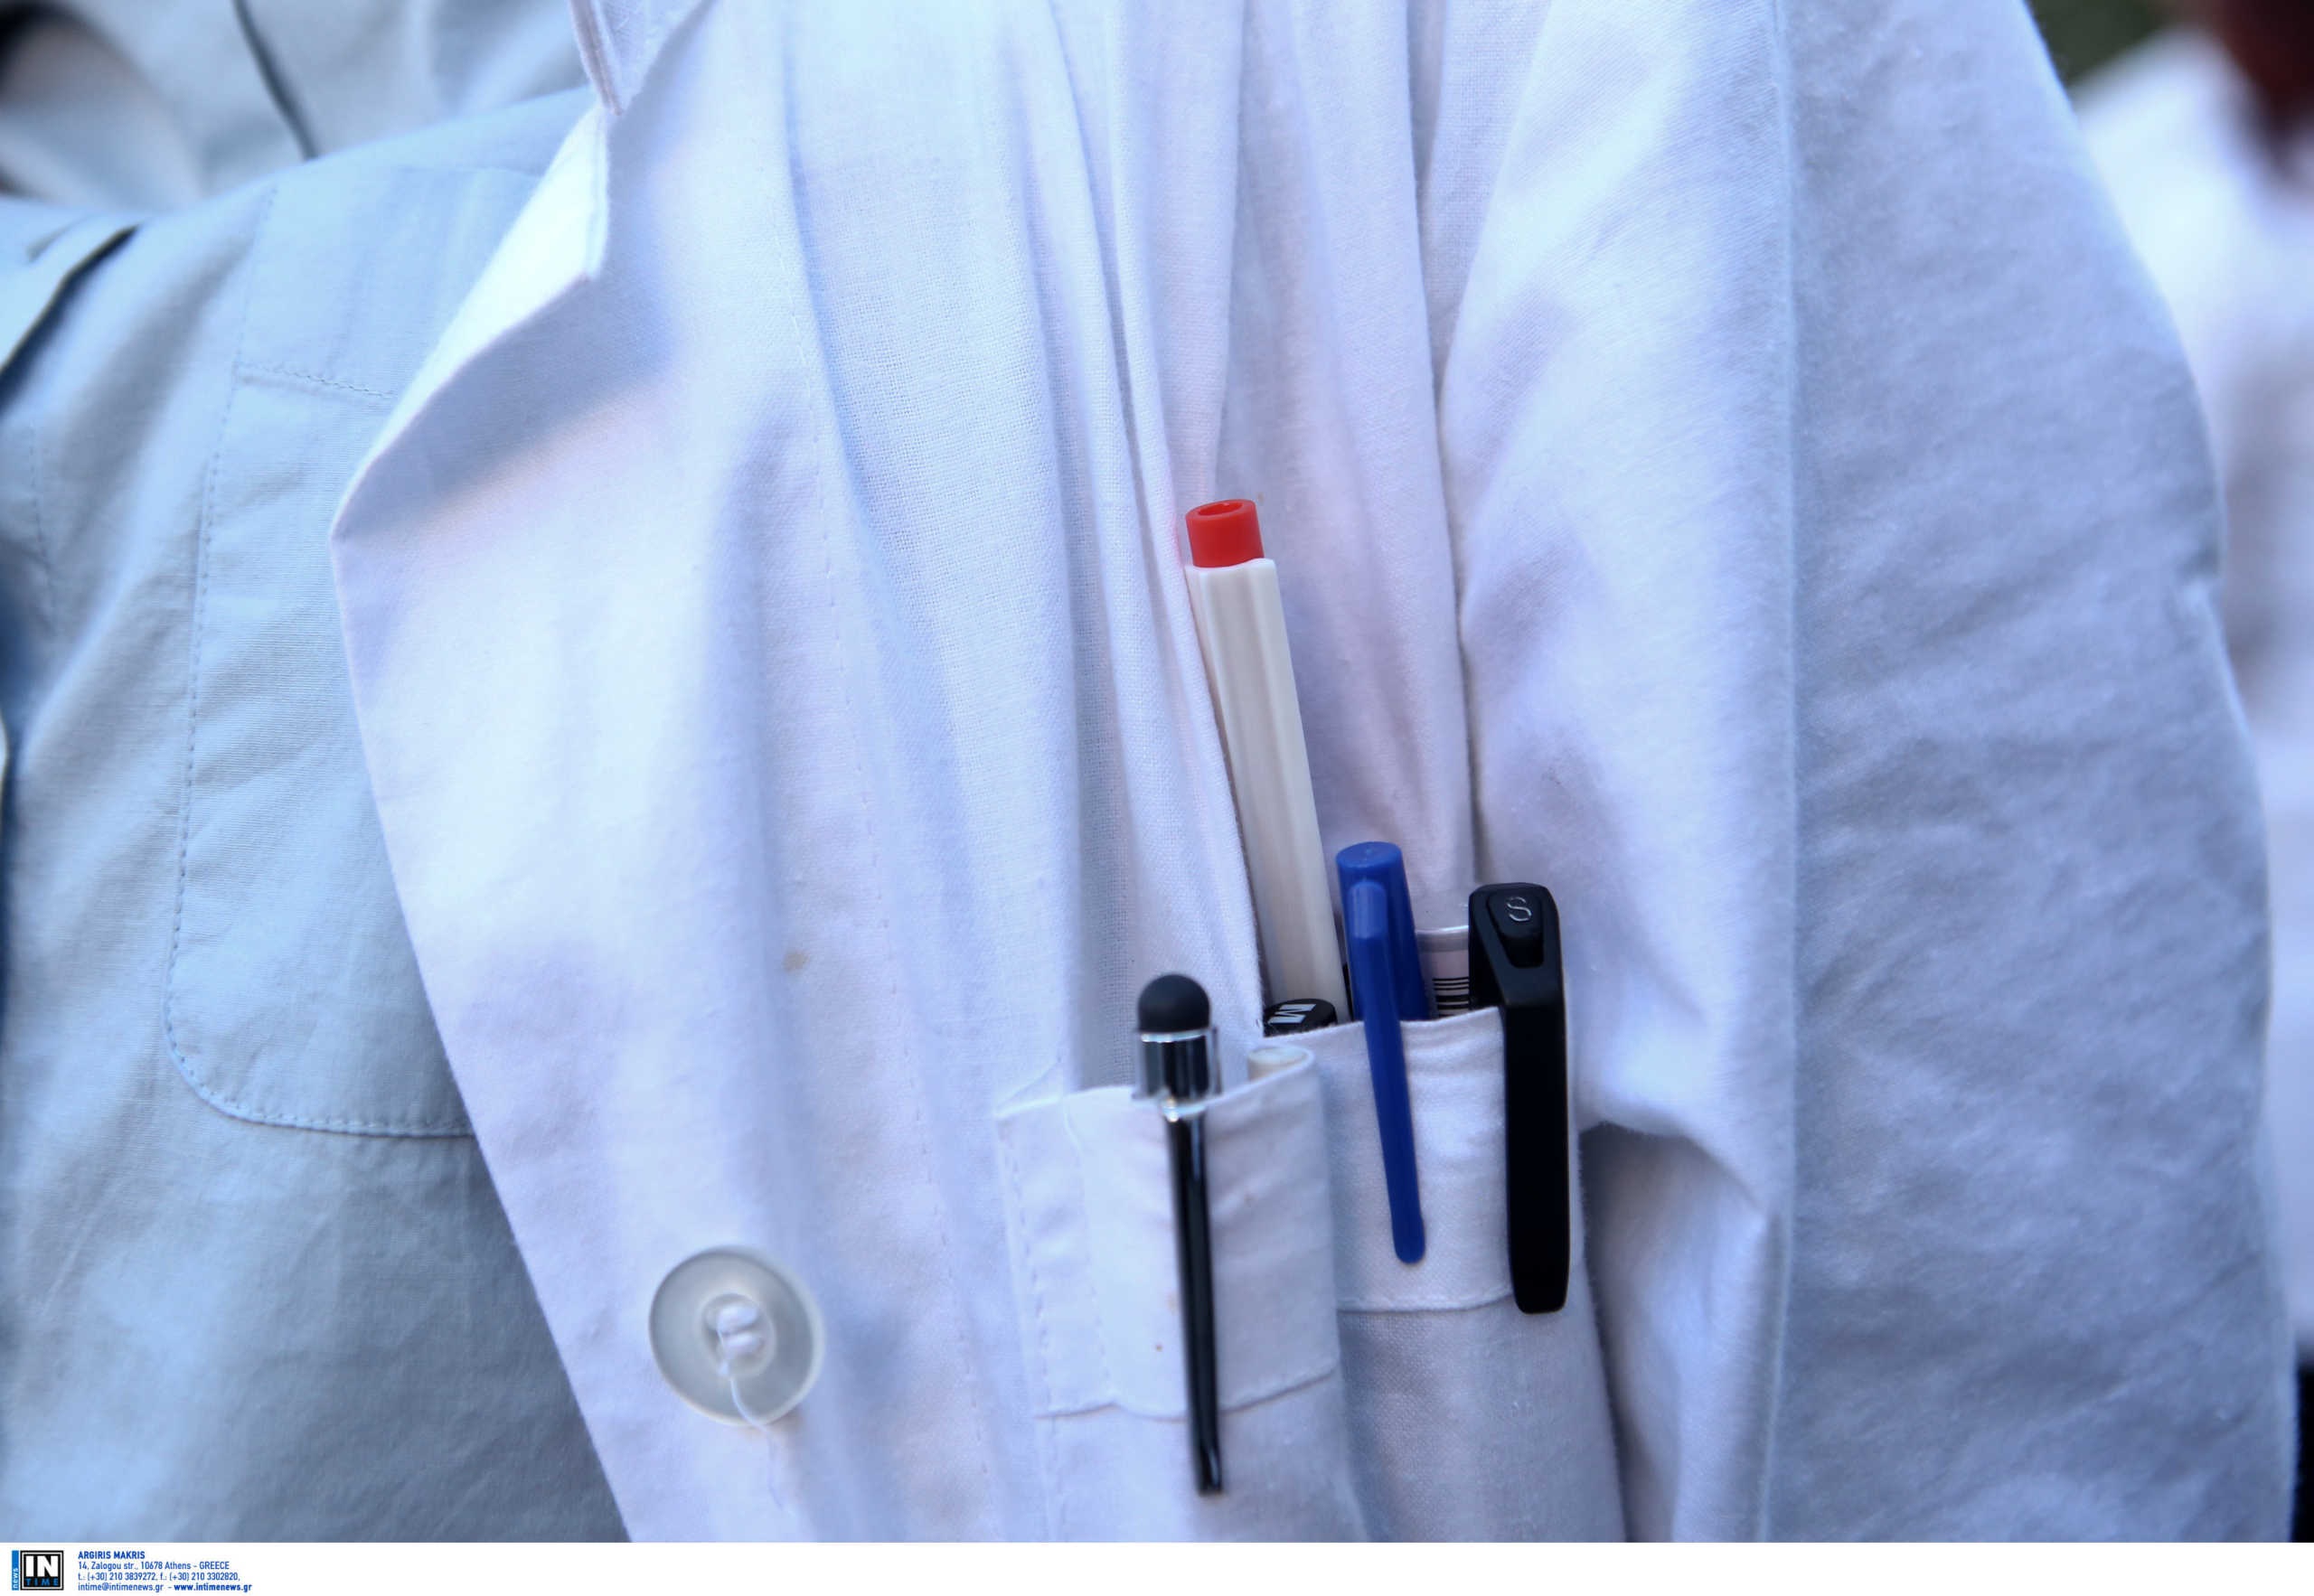 Κορονοϊός: Καταγγελίες για ανευθυνότητα γιατρού στην Πρέβεζα! Το μεγάλο λάθος που του χρεώνουν